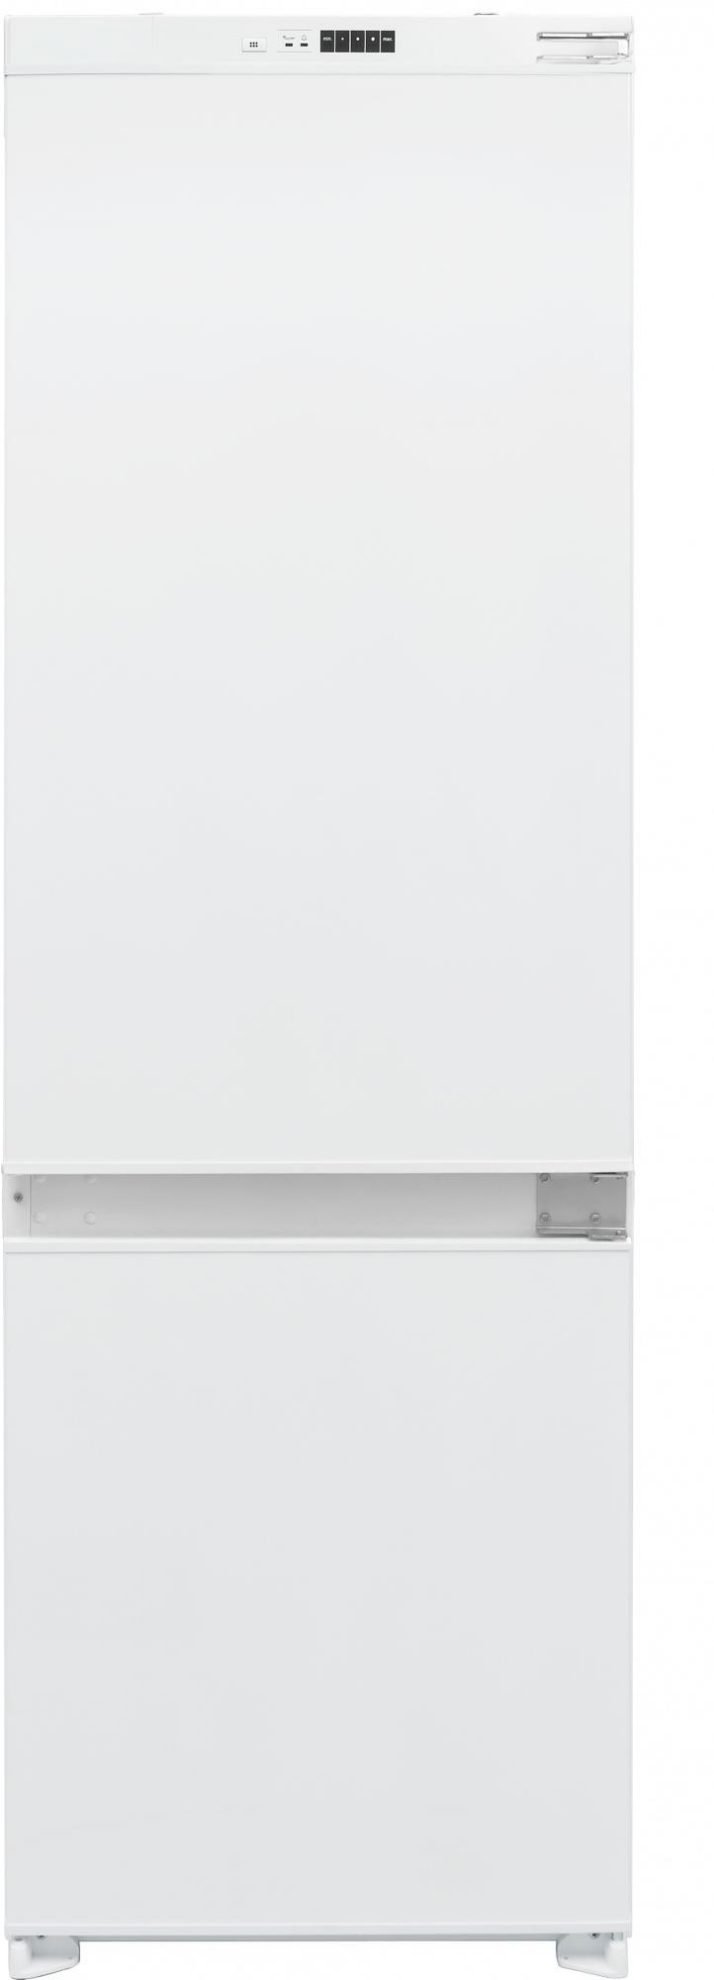 Изображение Холодильник Hyundai HBR 1785 белый (A+,287 кВтч/год)